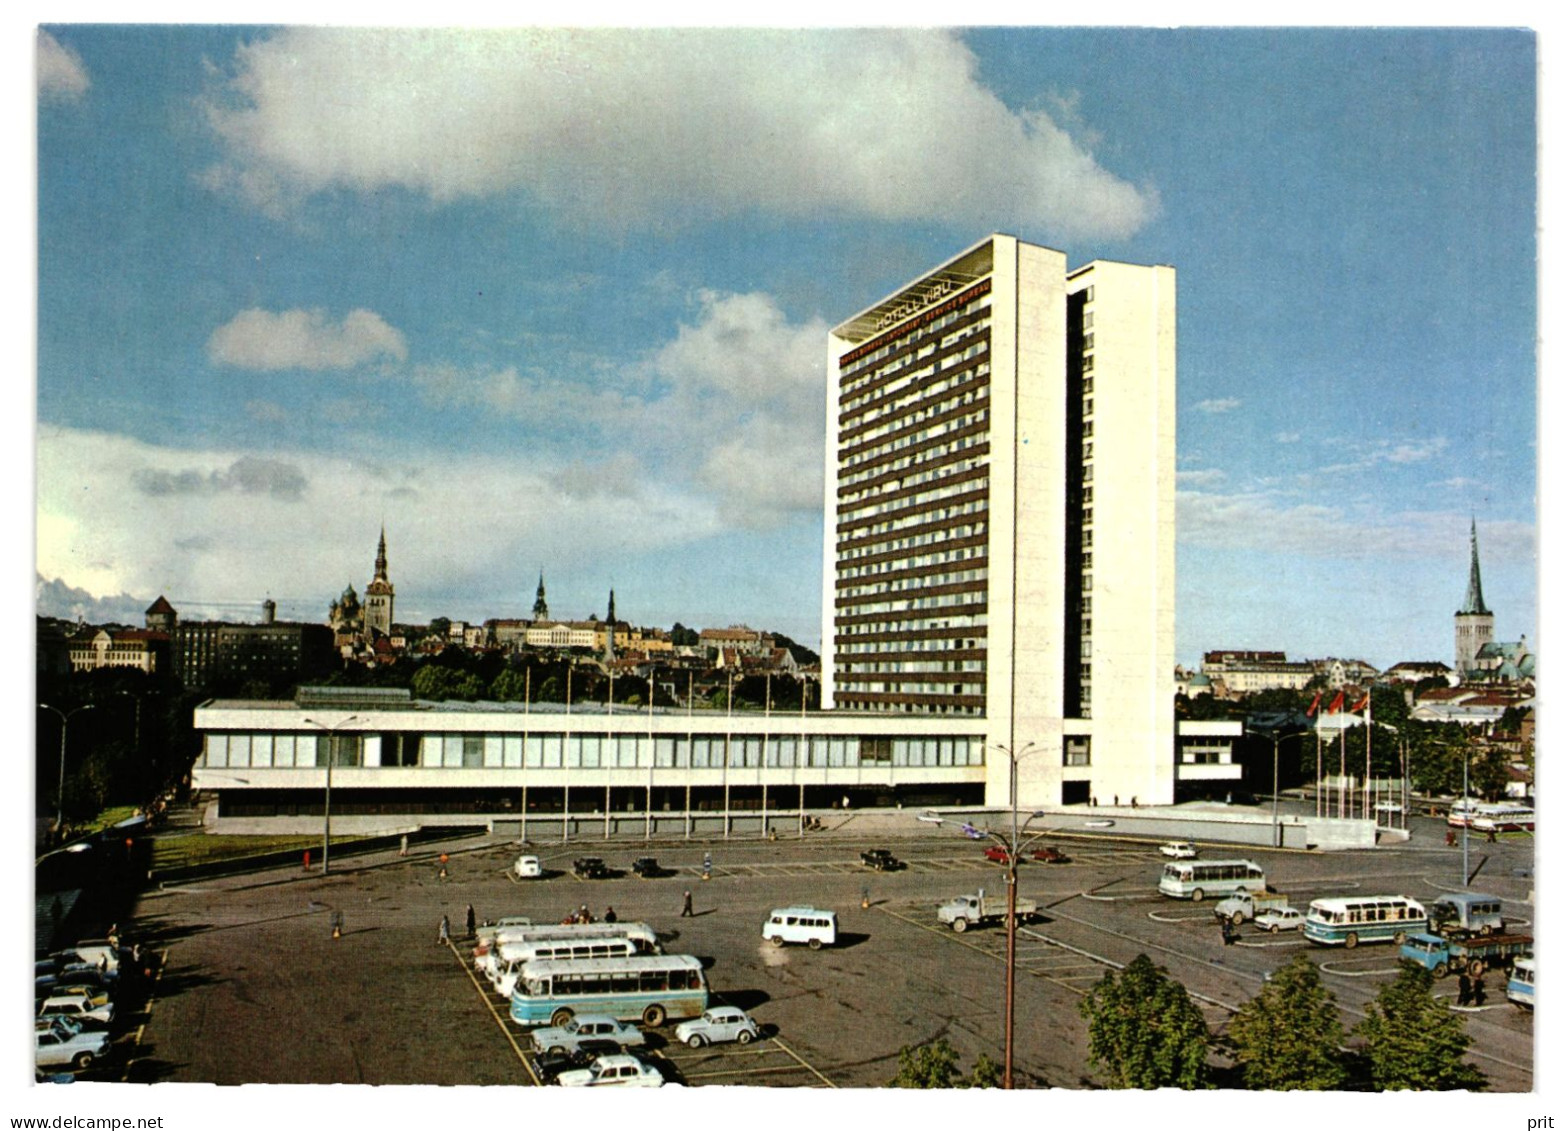 Hotel Viru, Tallinn Soviet Estonia 1970s Unused Postcard. Publisher Hotel Viru - Estonia